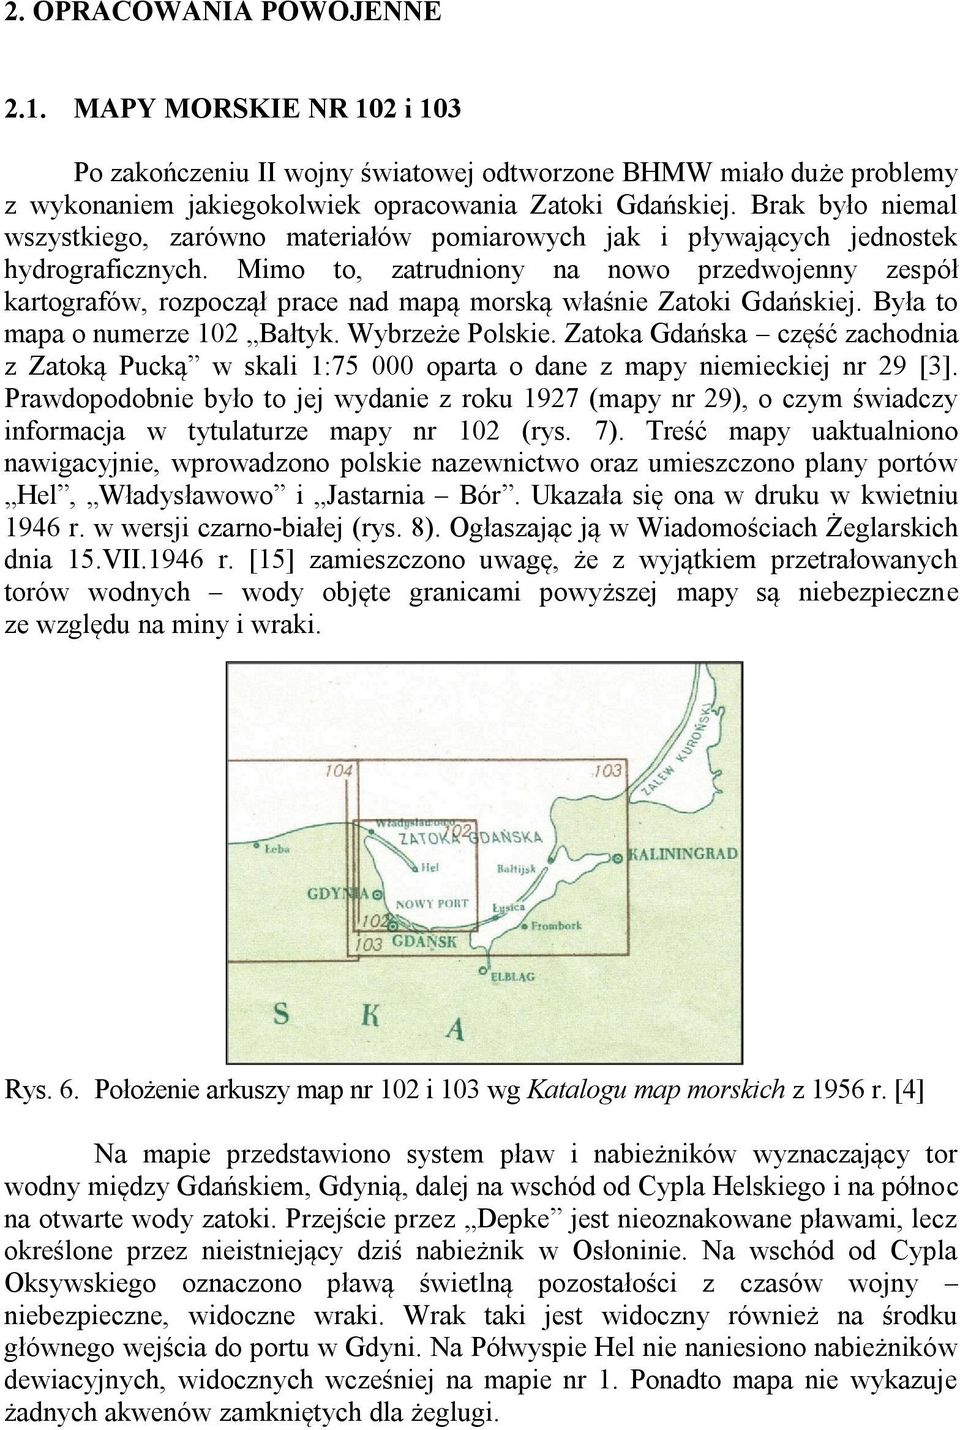 Mimo to, zatrudniony na nowo przedwojenny zespół kartografów, rozpoczął prace nad mapą morską właśnie Zatoki Gdańskiej. Była to mapa o numerze 102 Bałtyk. Wybrzeże Polskie.